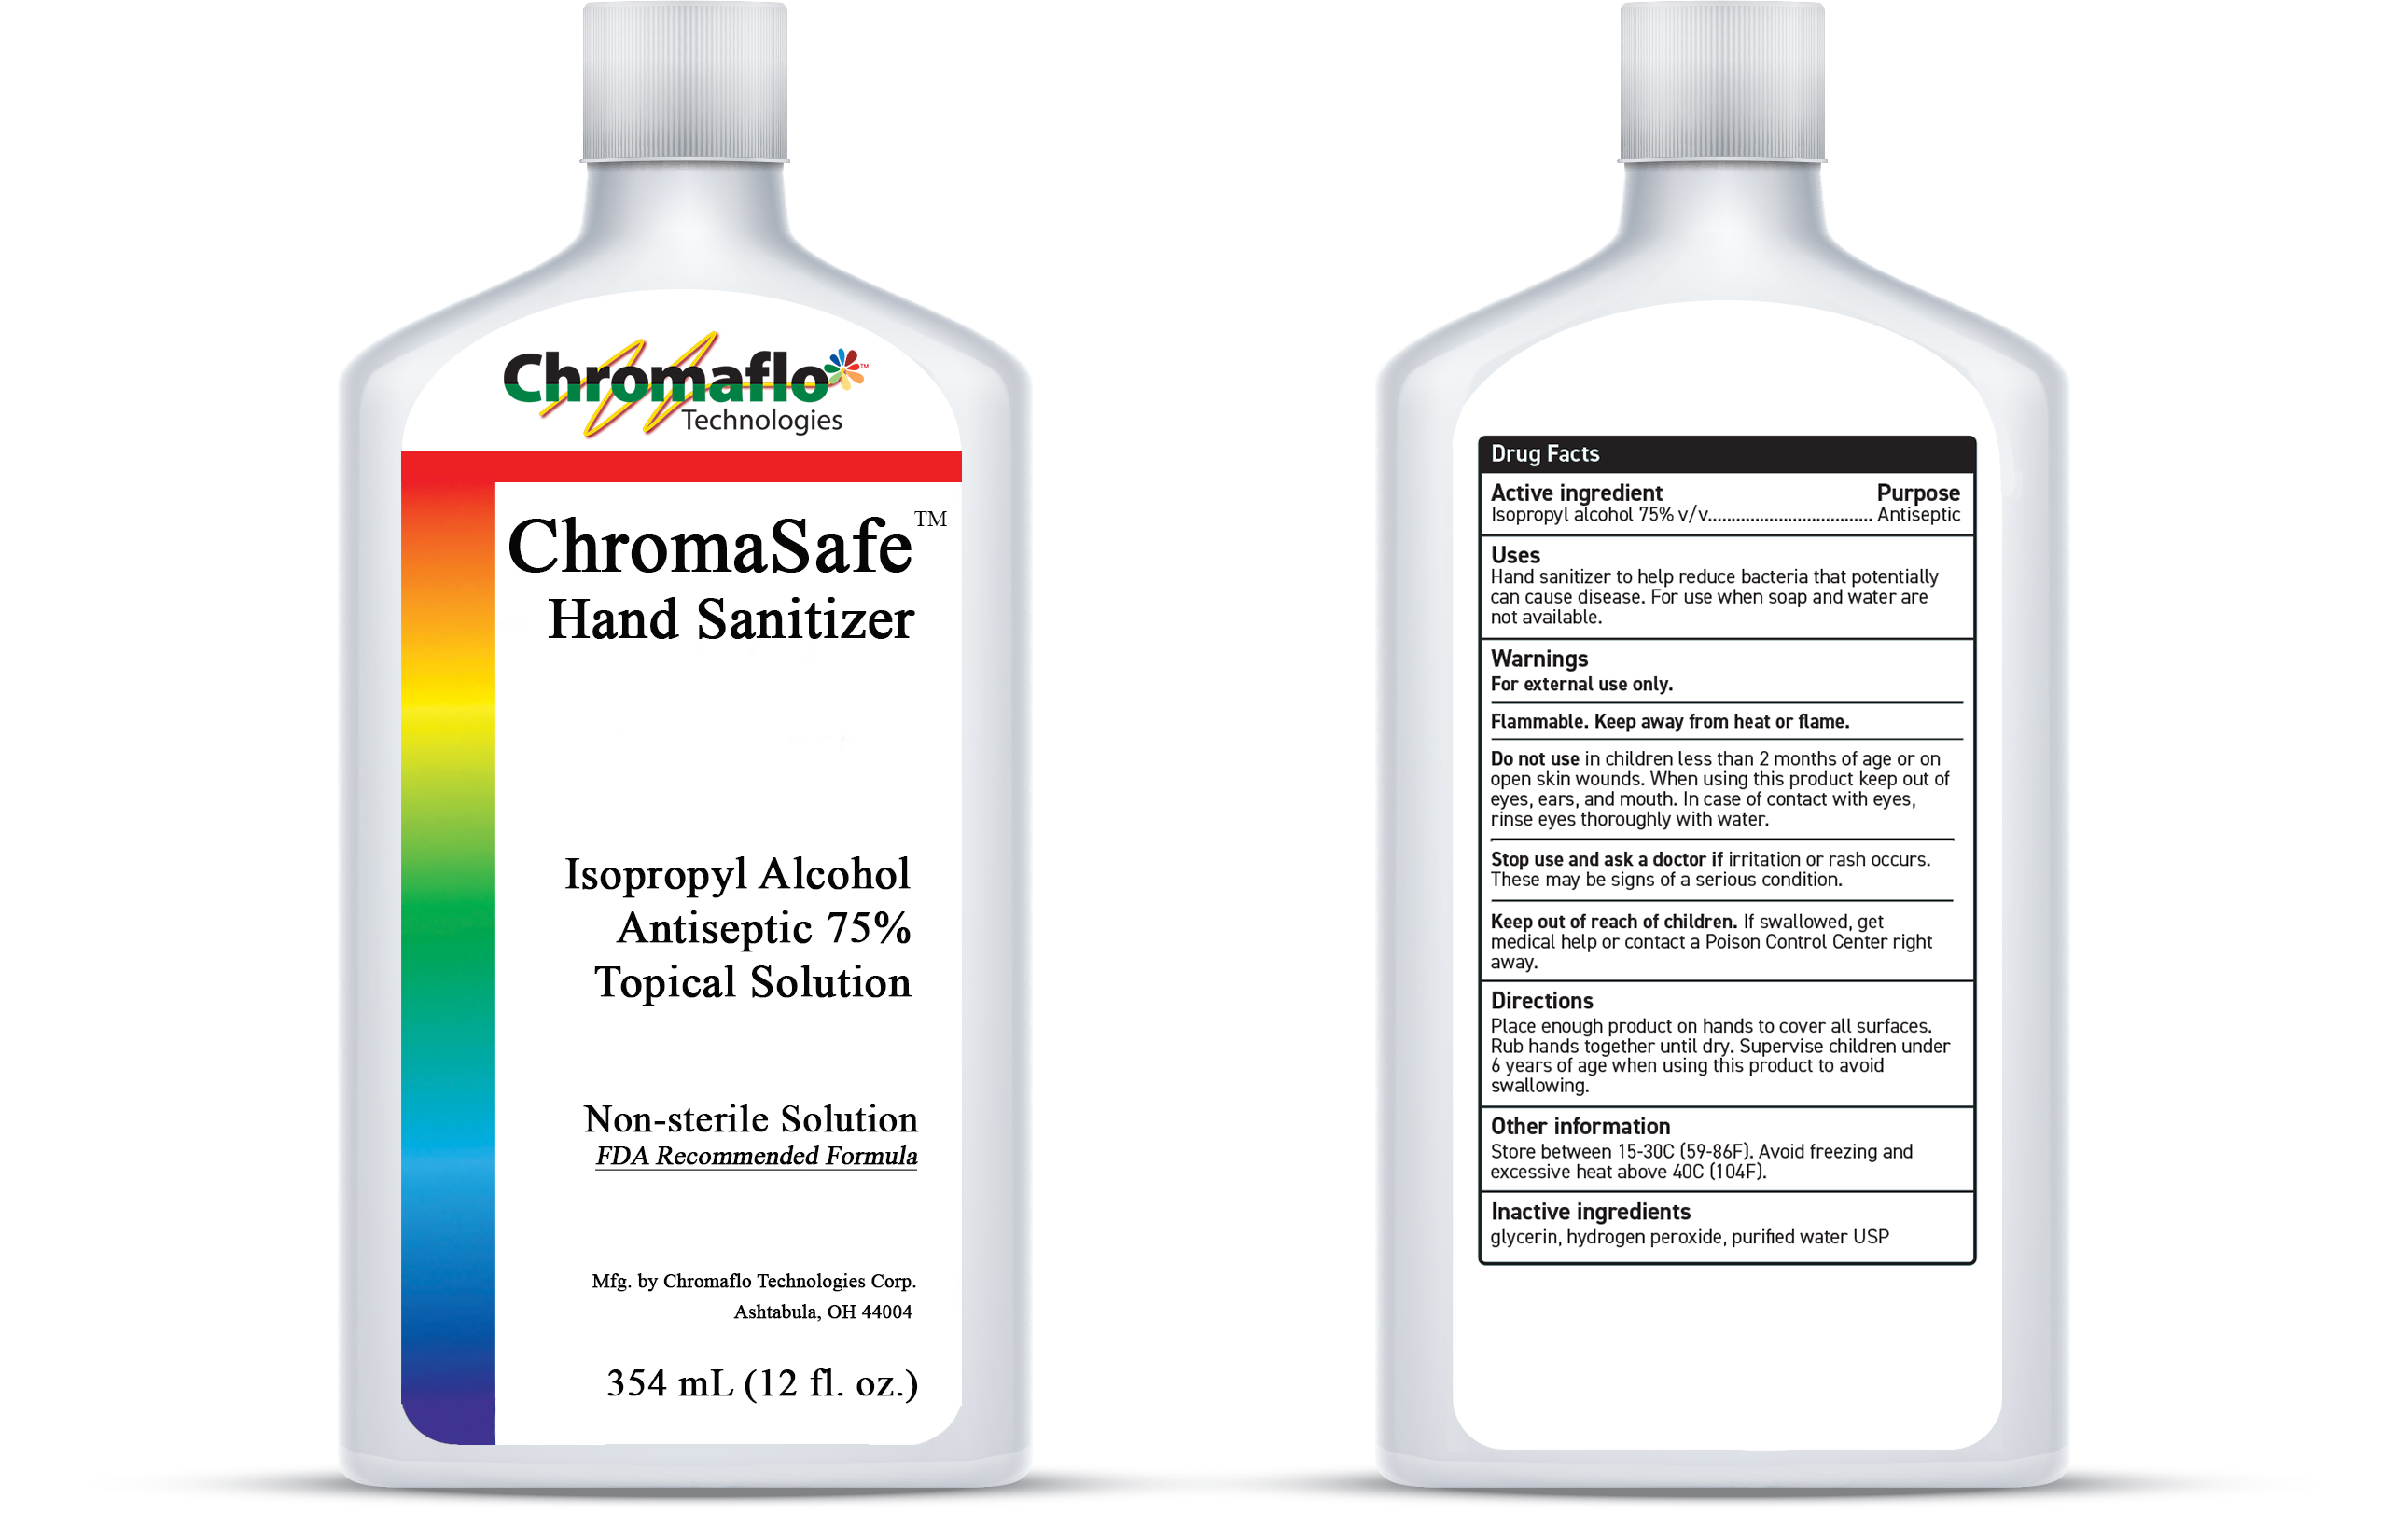 Chromaflo 354 mL bottle label